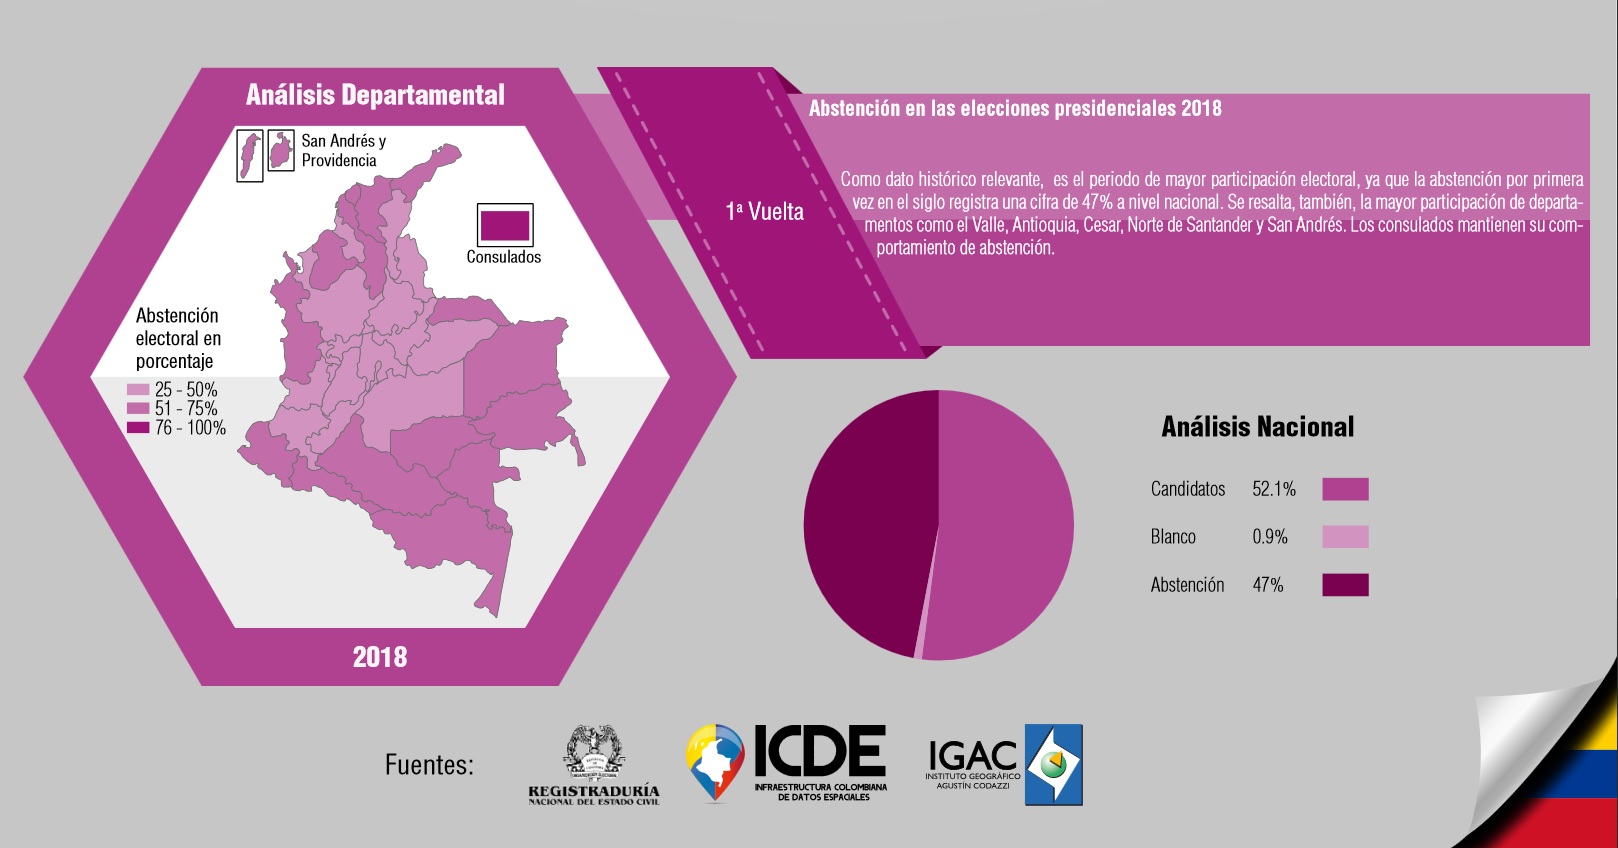 Mapeando la abstención electoral de Colombia en el siglo XXI/IGAC